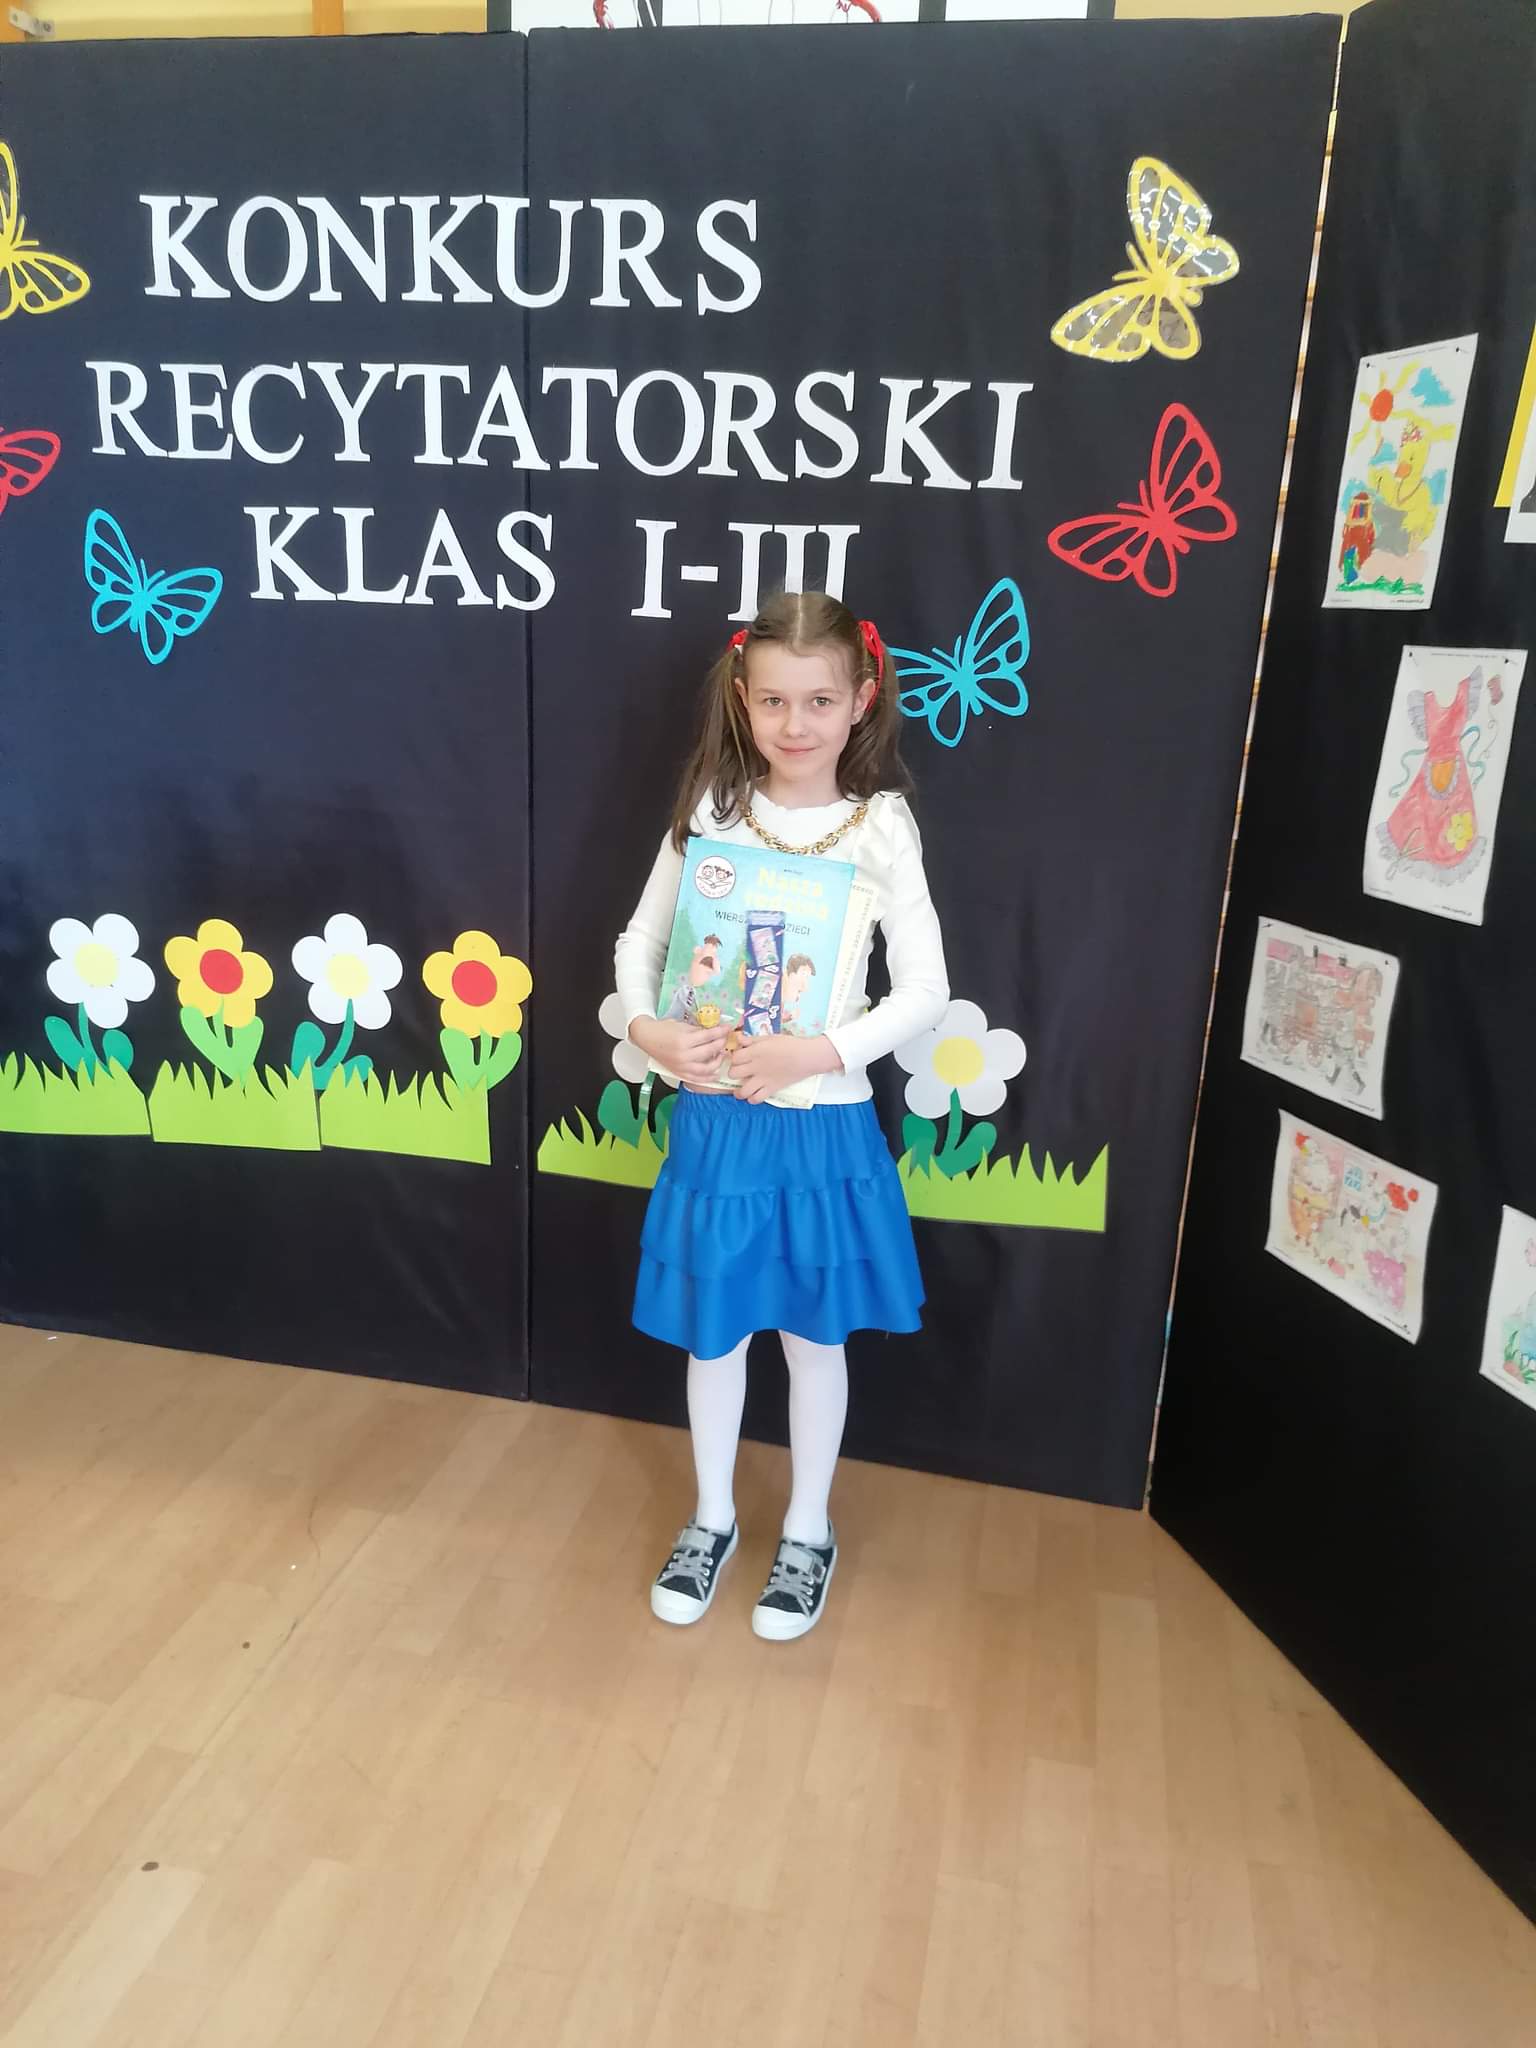 Dziewczynka trzymająca książkę w rękach stoi a za nią tablica z tekstem Konkurs recytatorski klas I-III